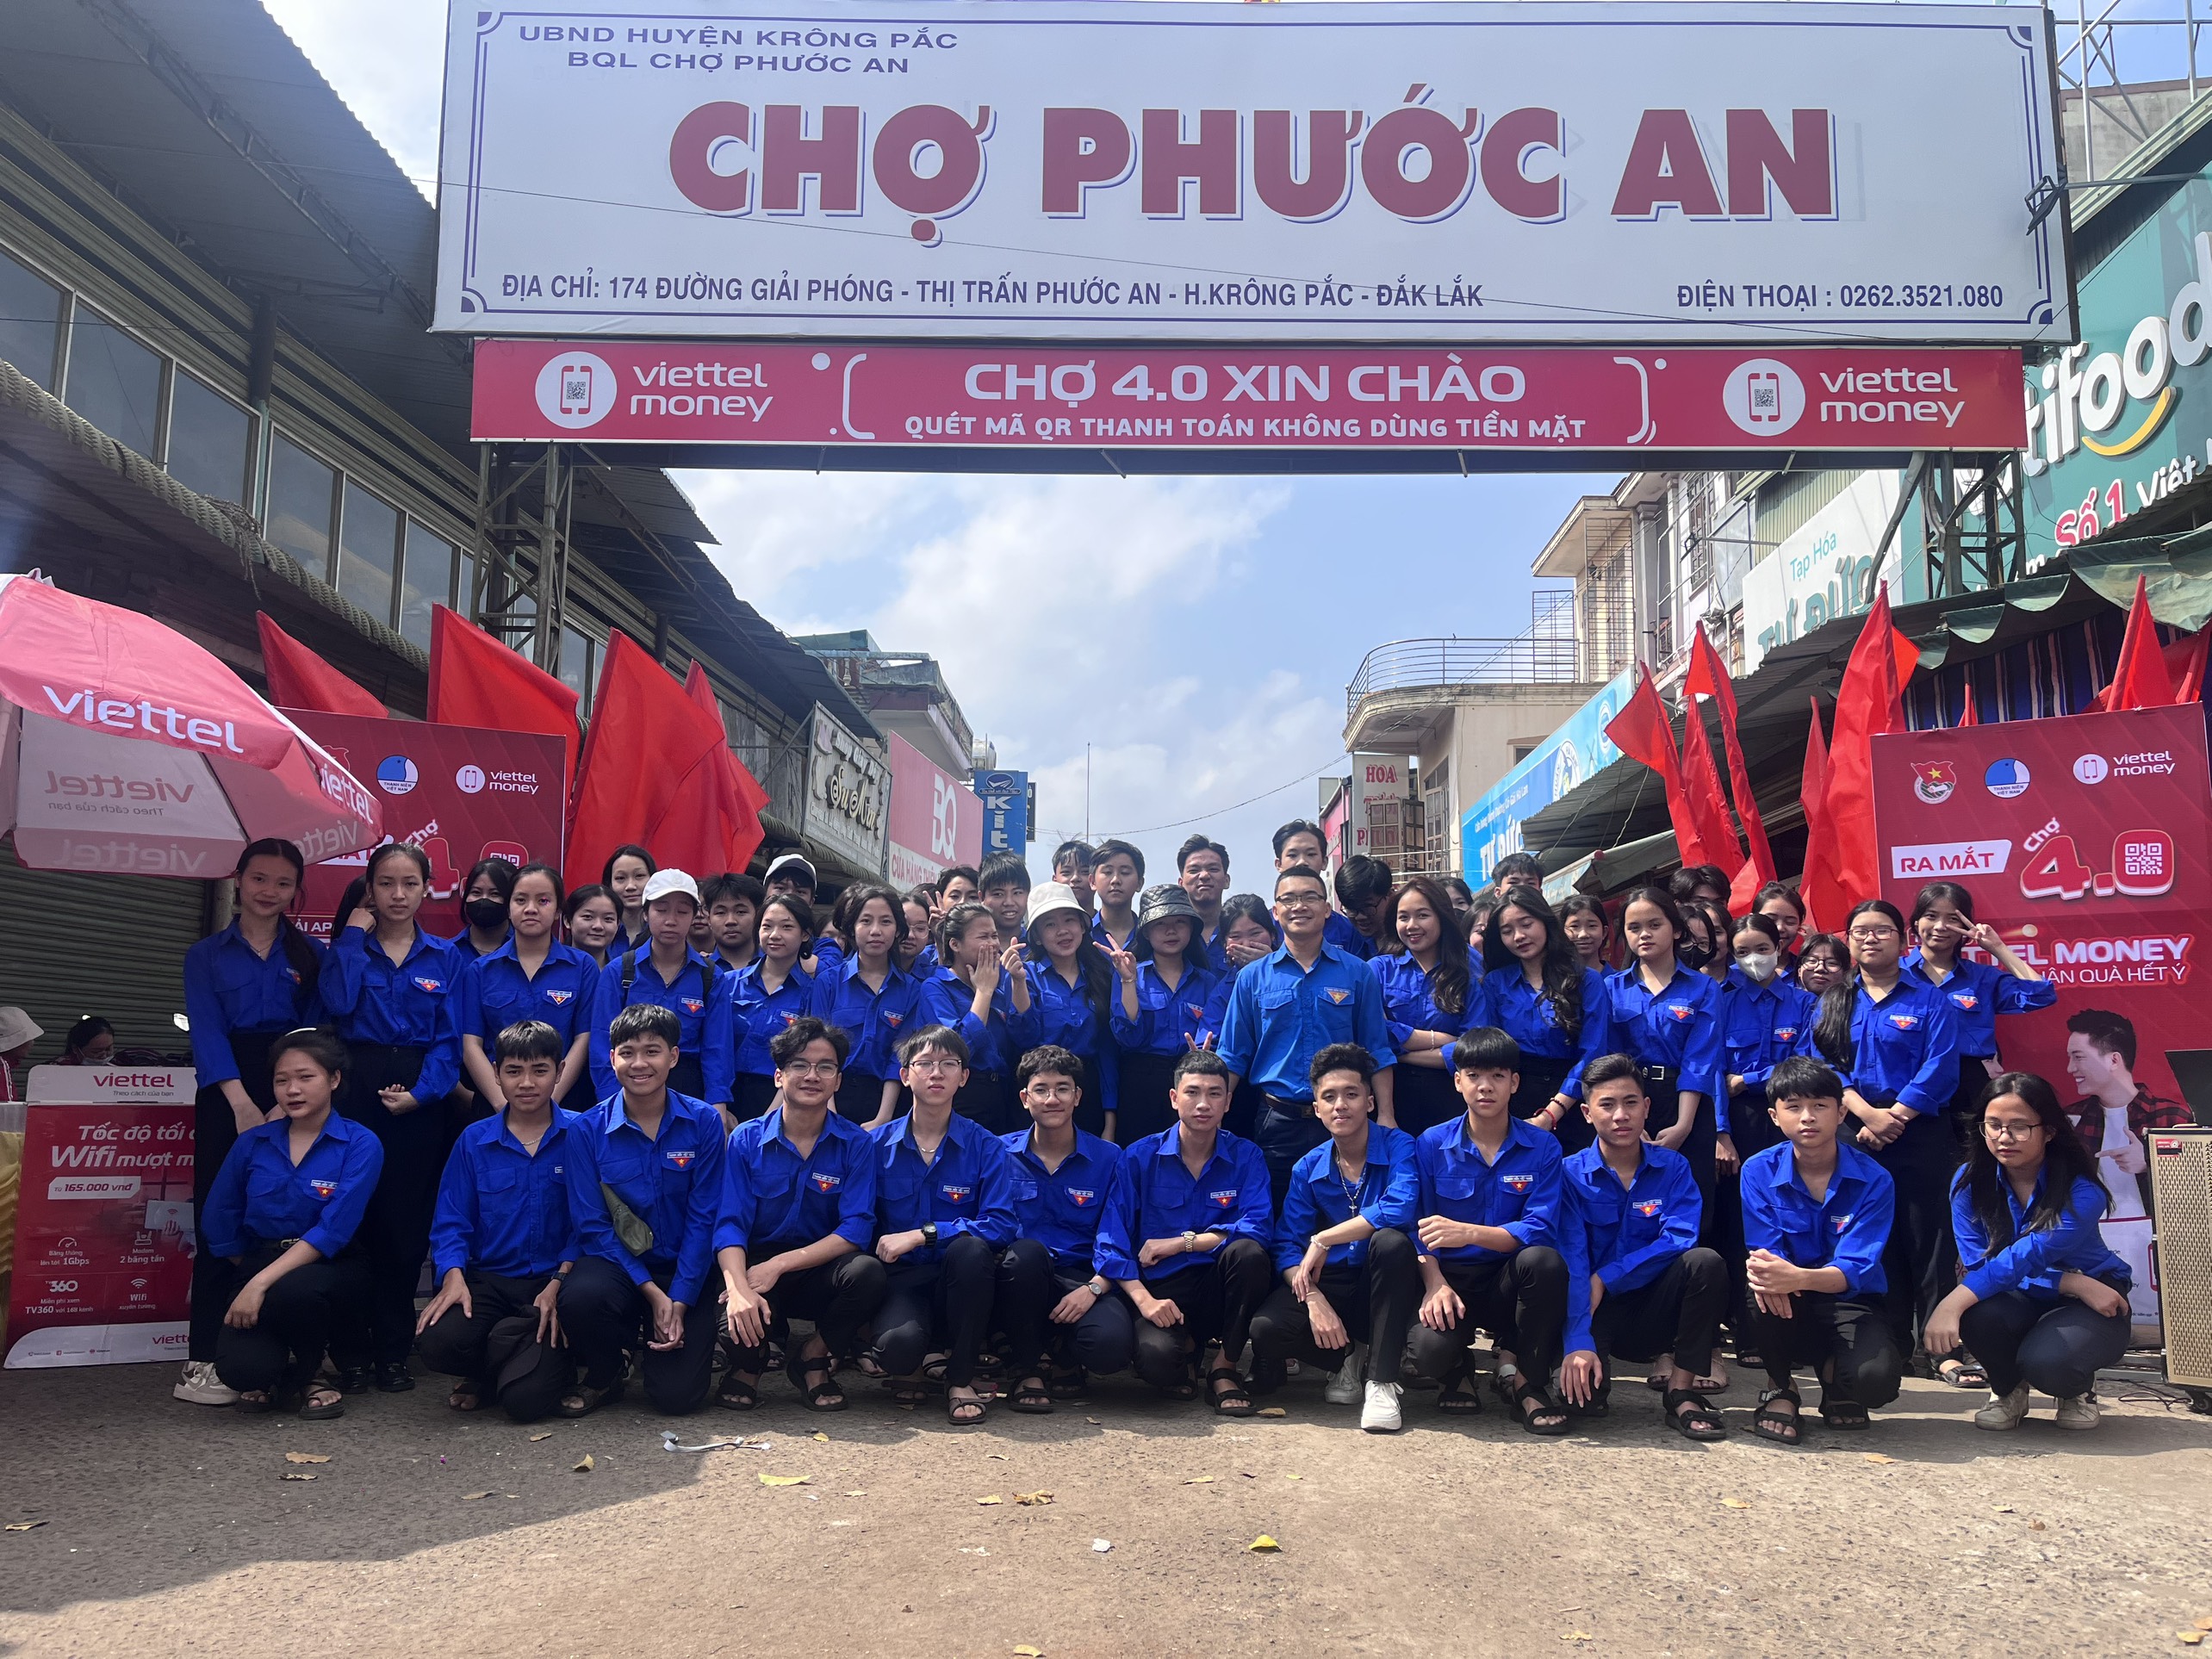 Đoàn thanh niên thị trấn Phước An đã tổ chức chương trình:"Triển khai nhân rộng mô hình chợ 4.0" tại trung tâm chợ thị trấn Phước An.